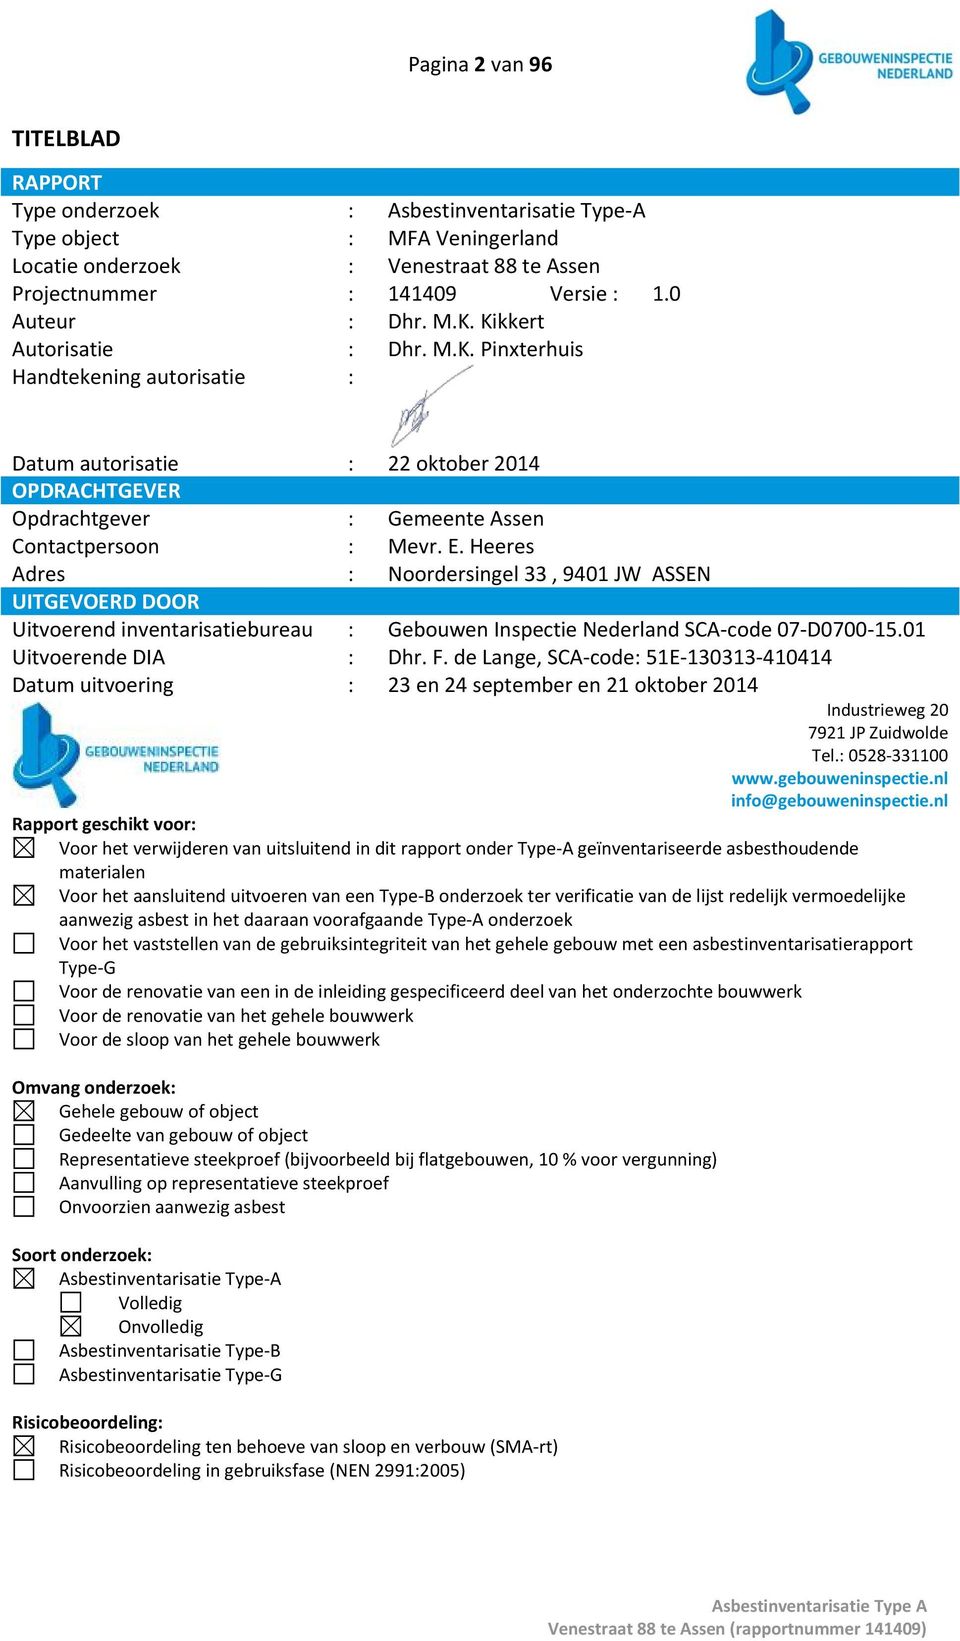 Heeres Adres : Noordersingel 33, 9401 JW ASSEN UITGEVOERD DOOR Uitvoerend inventarisatiebureau : Gebouwen Inspectie Nederland SCA code 07 D0700 15.01 Uitvoerende DIA : Dhr. F.